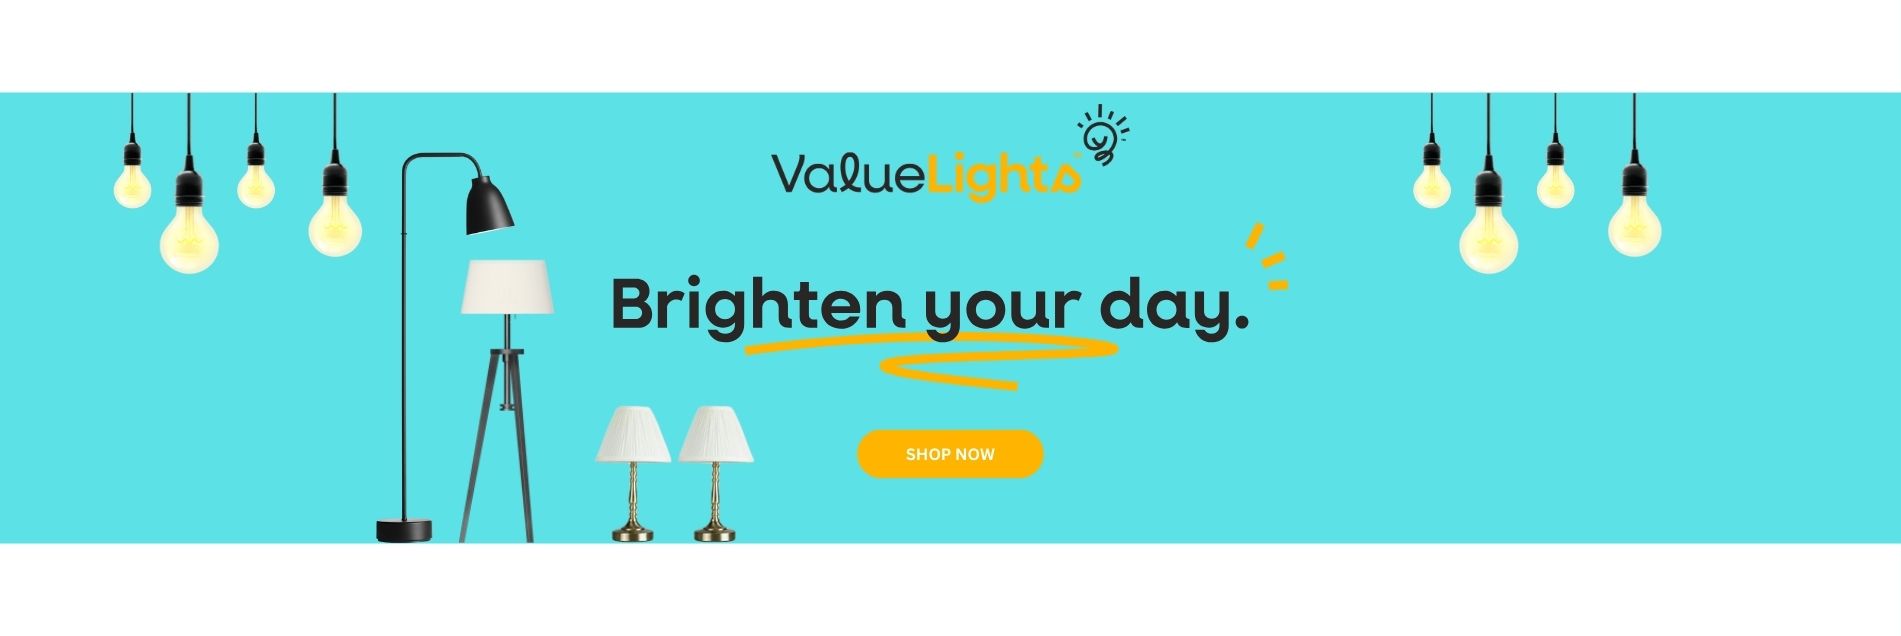 value light